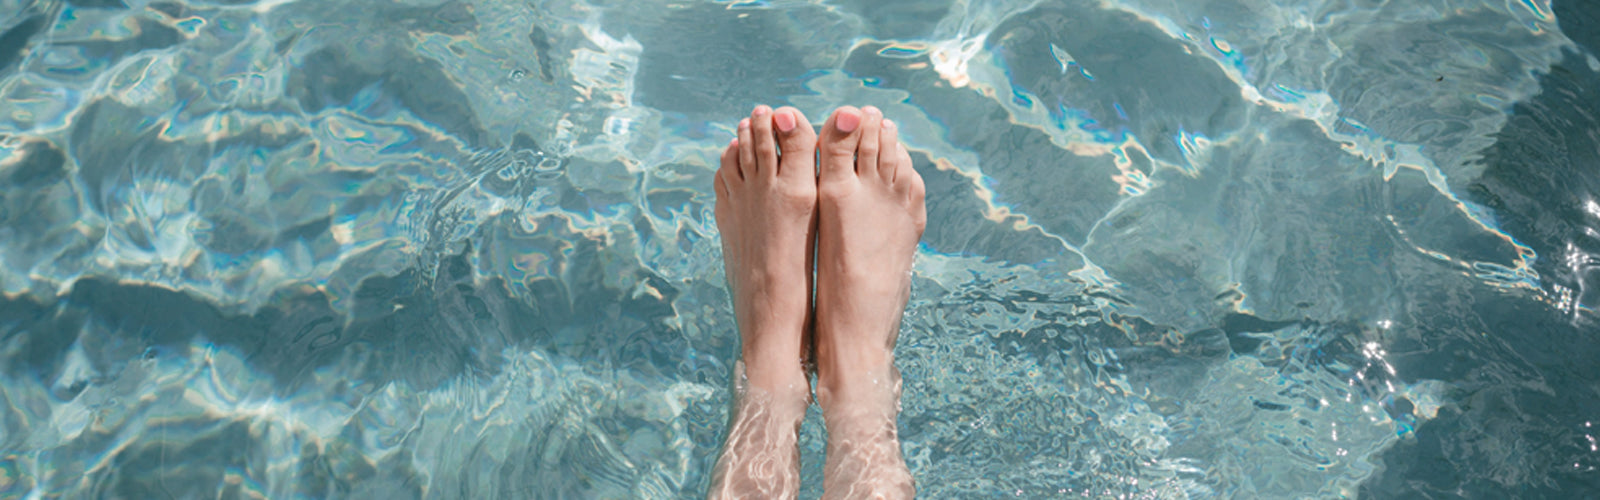 feet in a pool